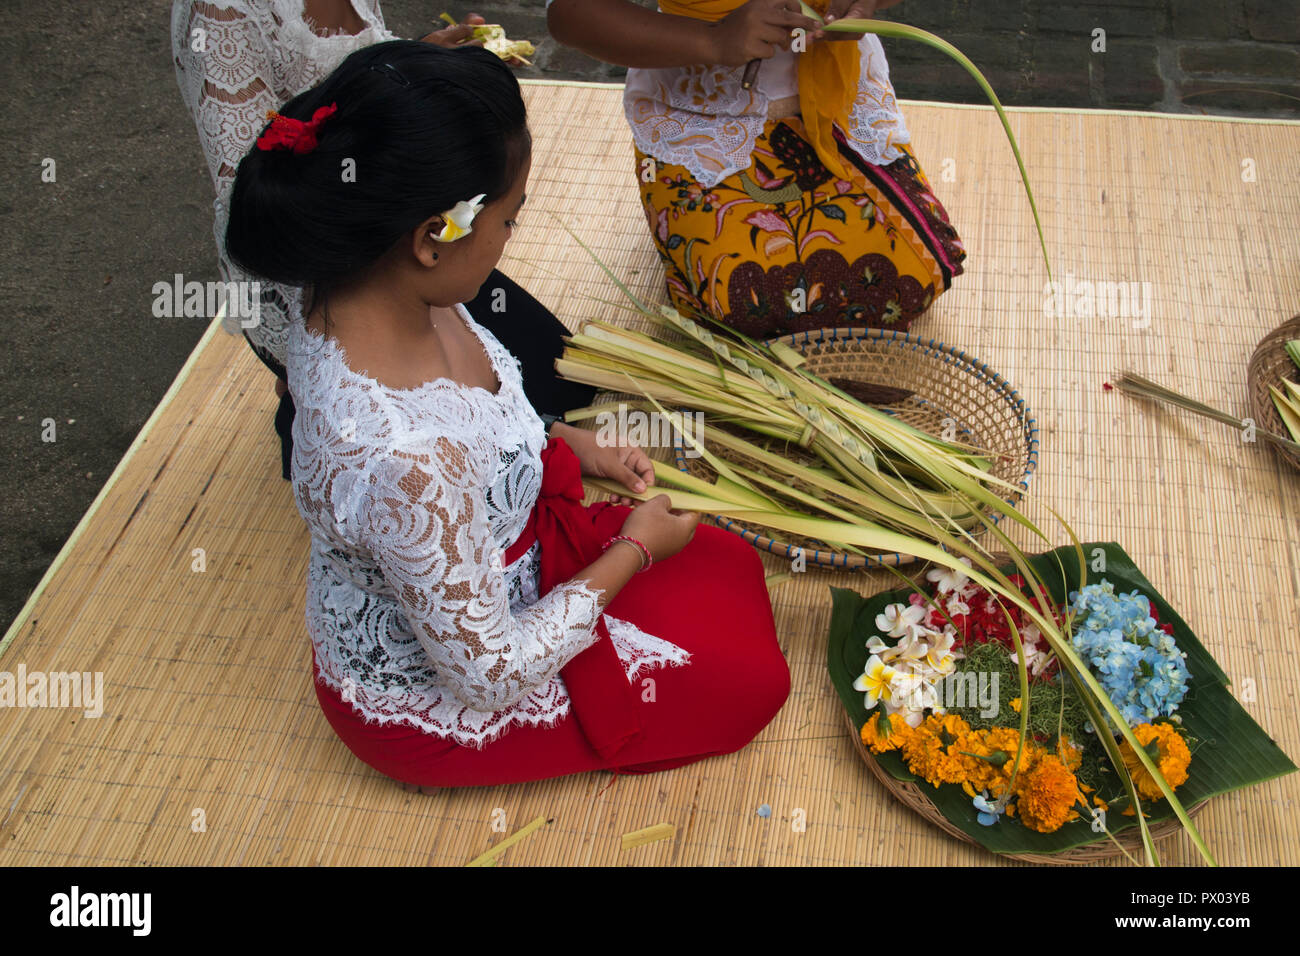 PEMUTERAN, BALI - Gennaio 2018: un gruppo di donne di Bali, Indonesia preparare le offerte giornaliere con cibo e fiori Foto Stock